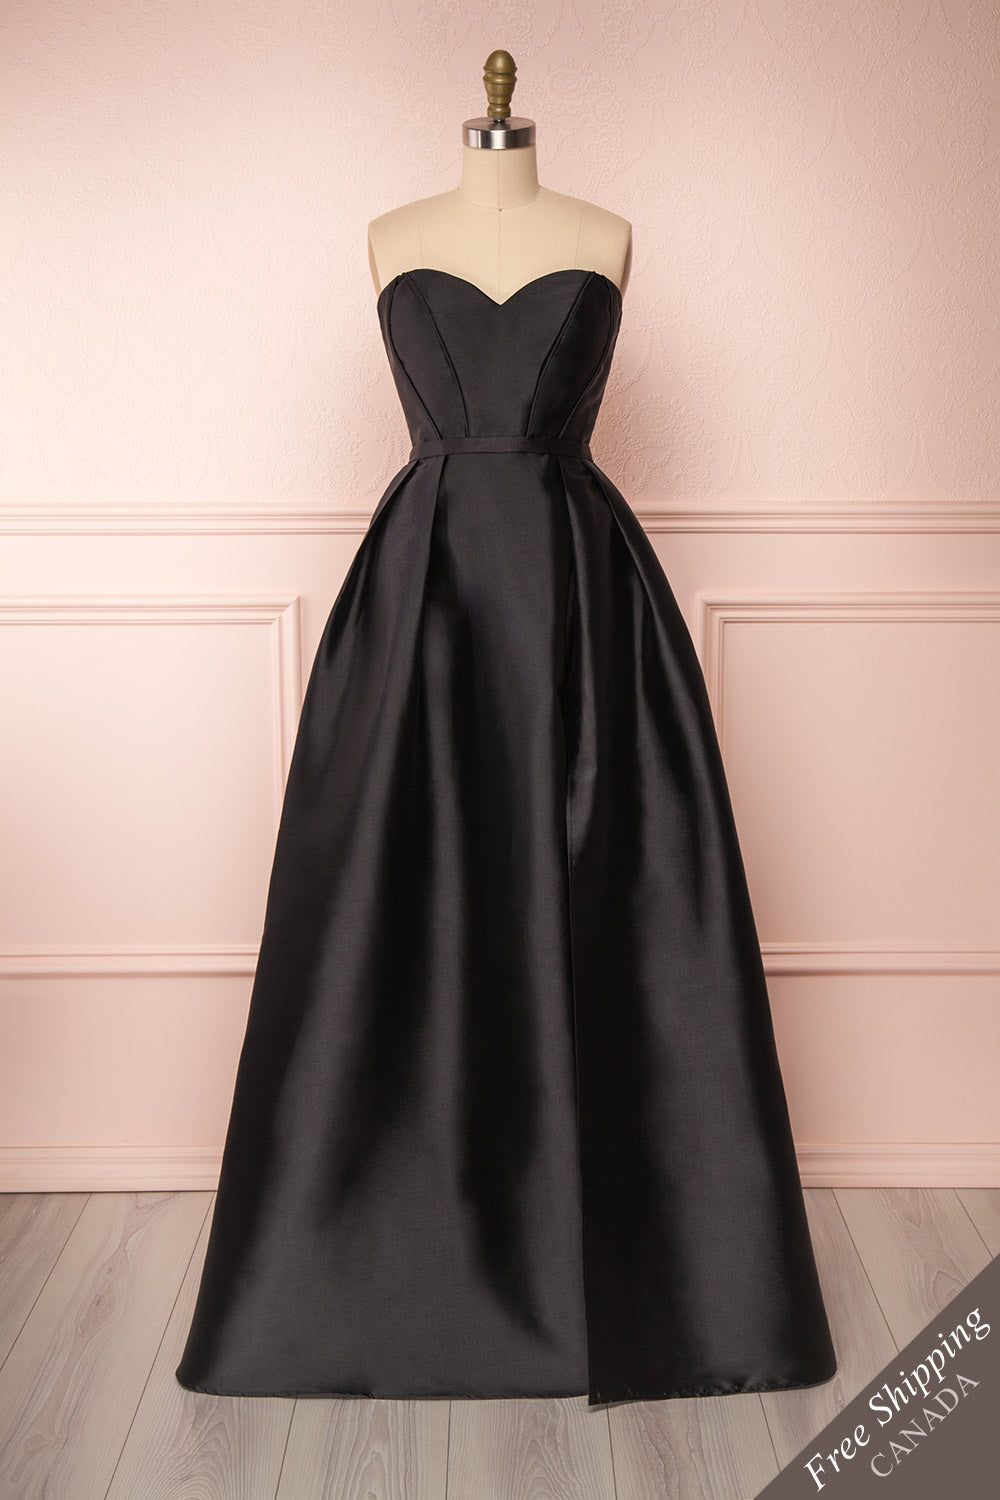 Rowane | Black Bustier Gown